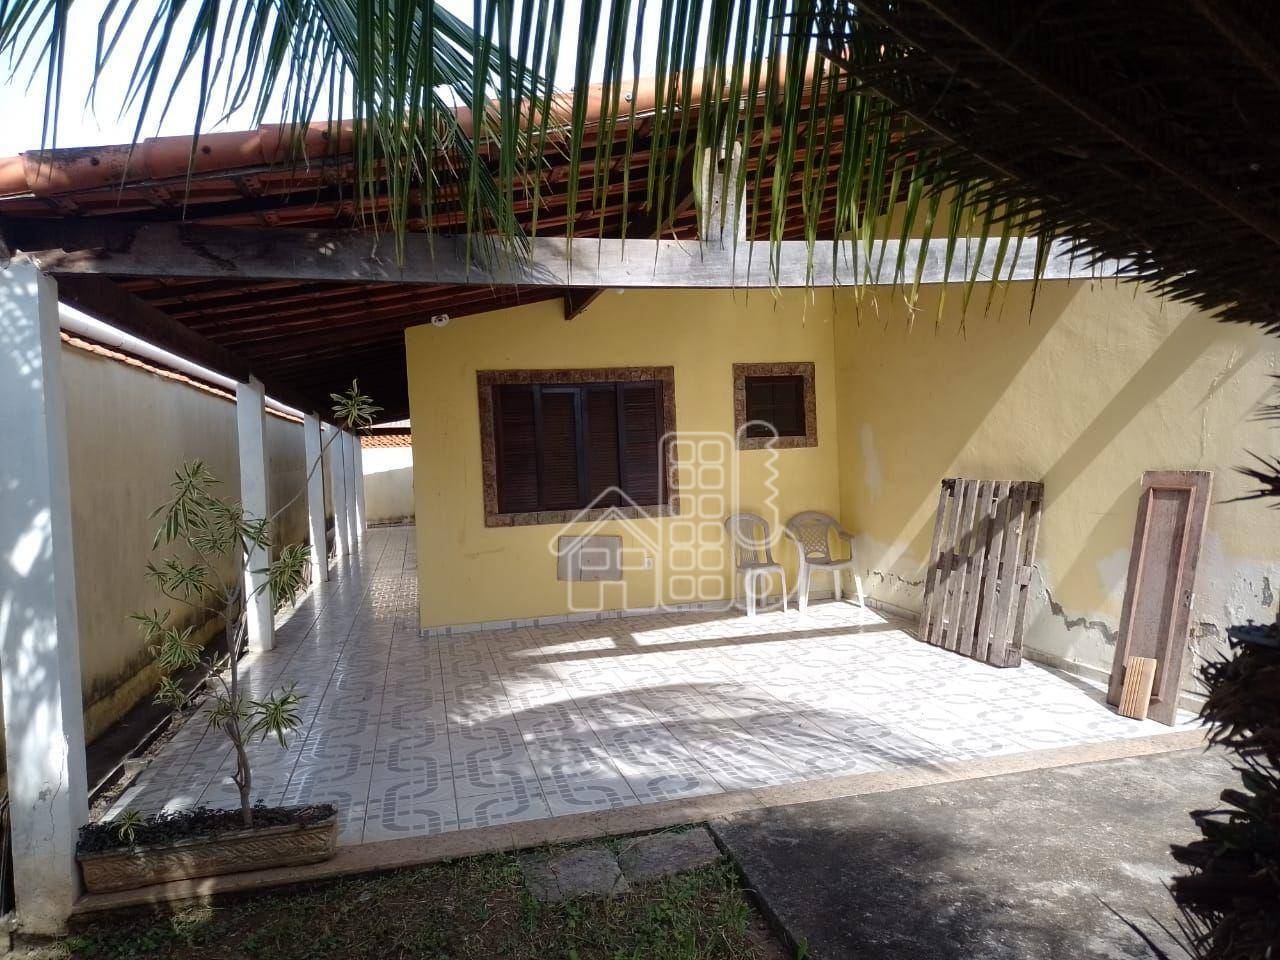 Casa com 1 dormitório à venda, 55 m² por R$ 260.000,99 - Jardim Atlântico Leste (Itaipuaçu) - Maricá/RJ